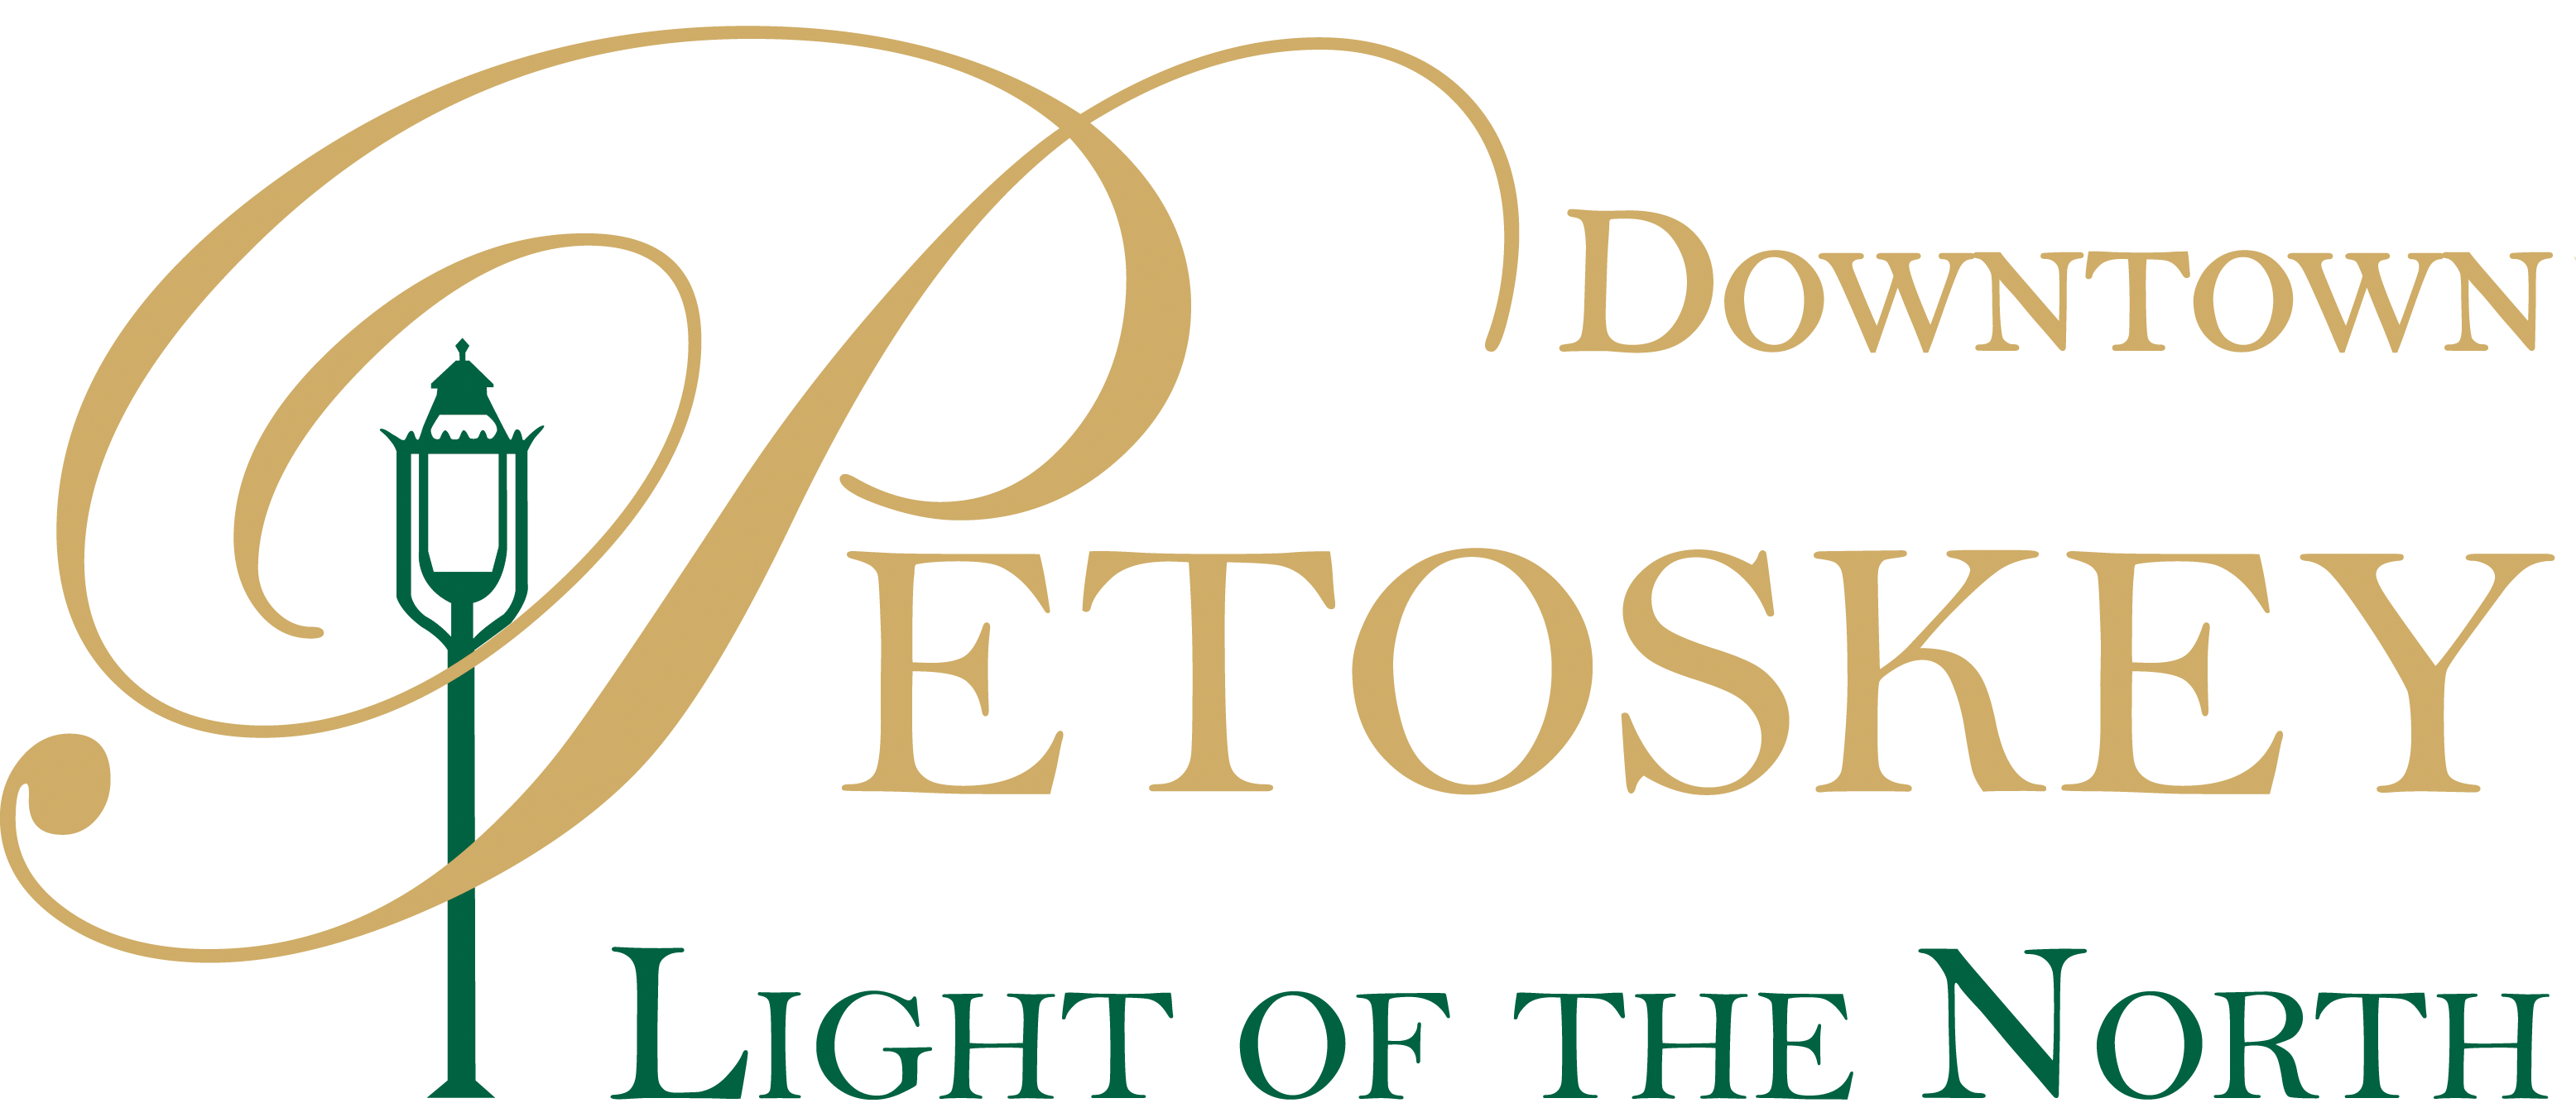 Downtown Petoskey Logo